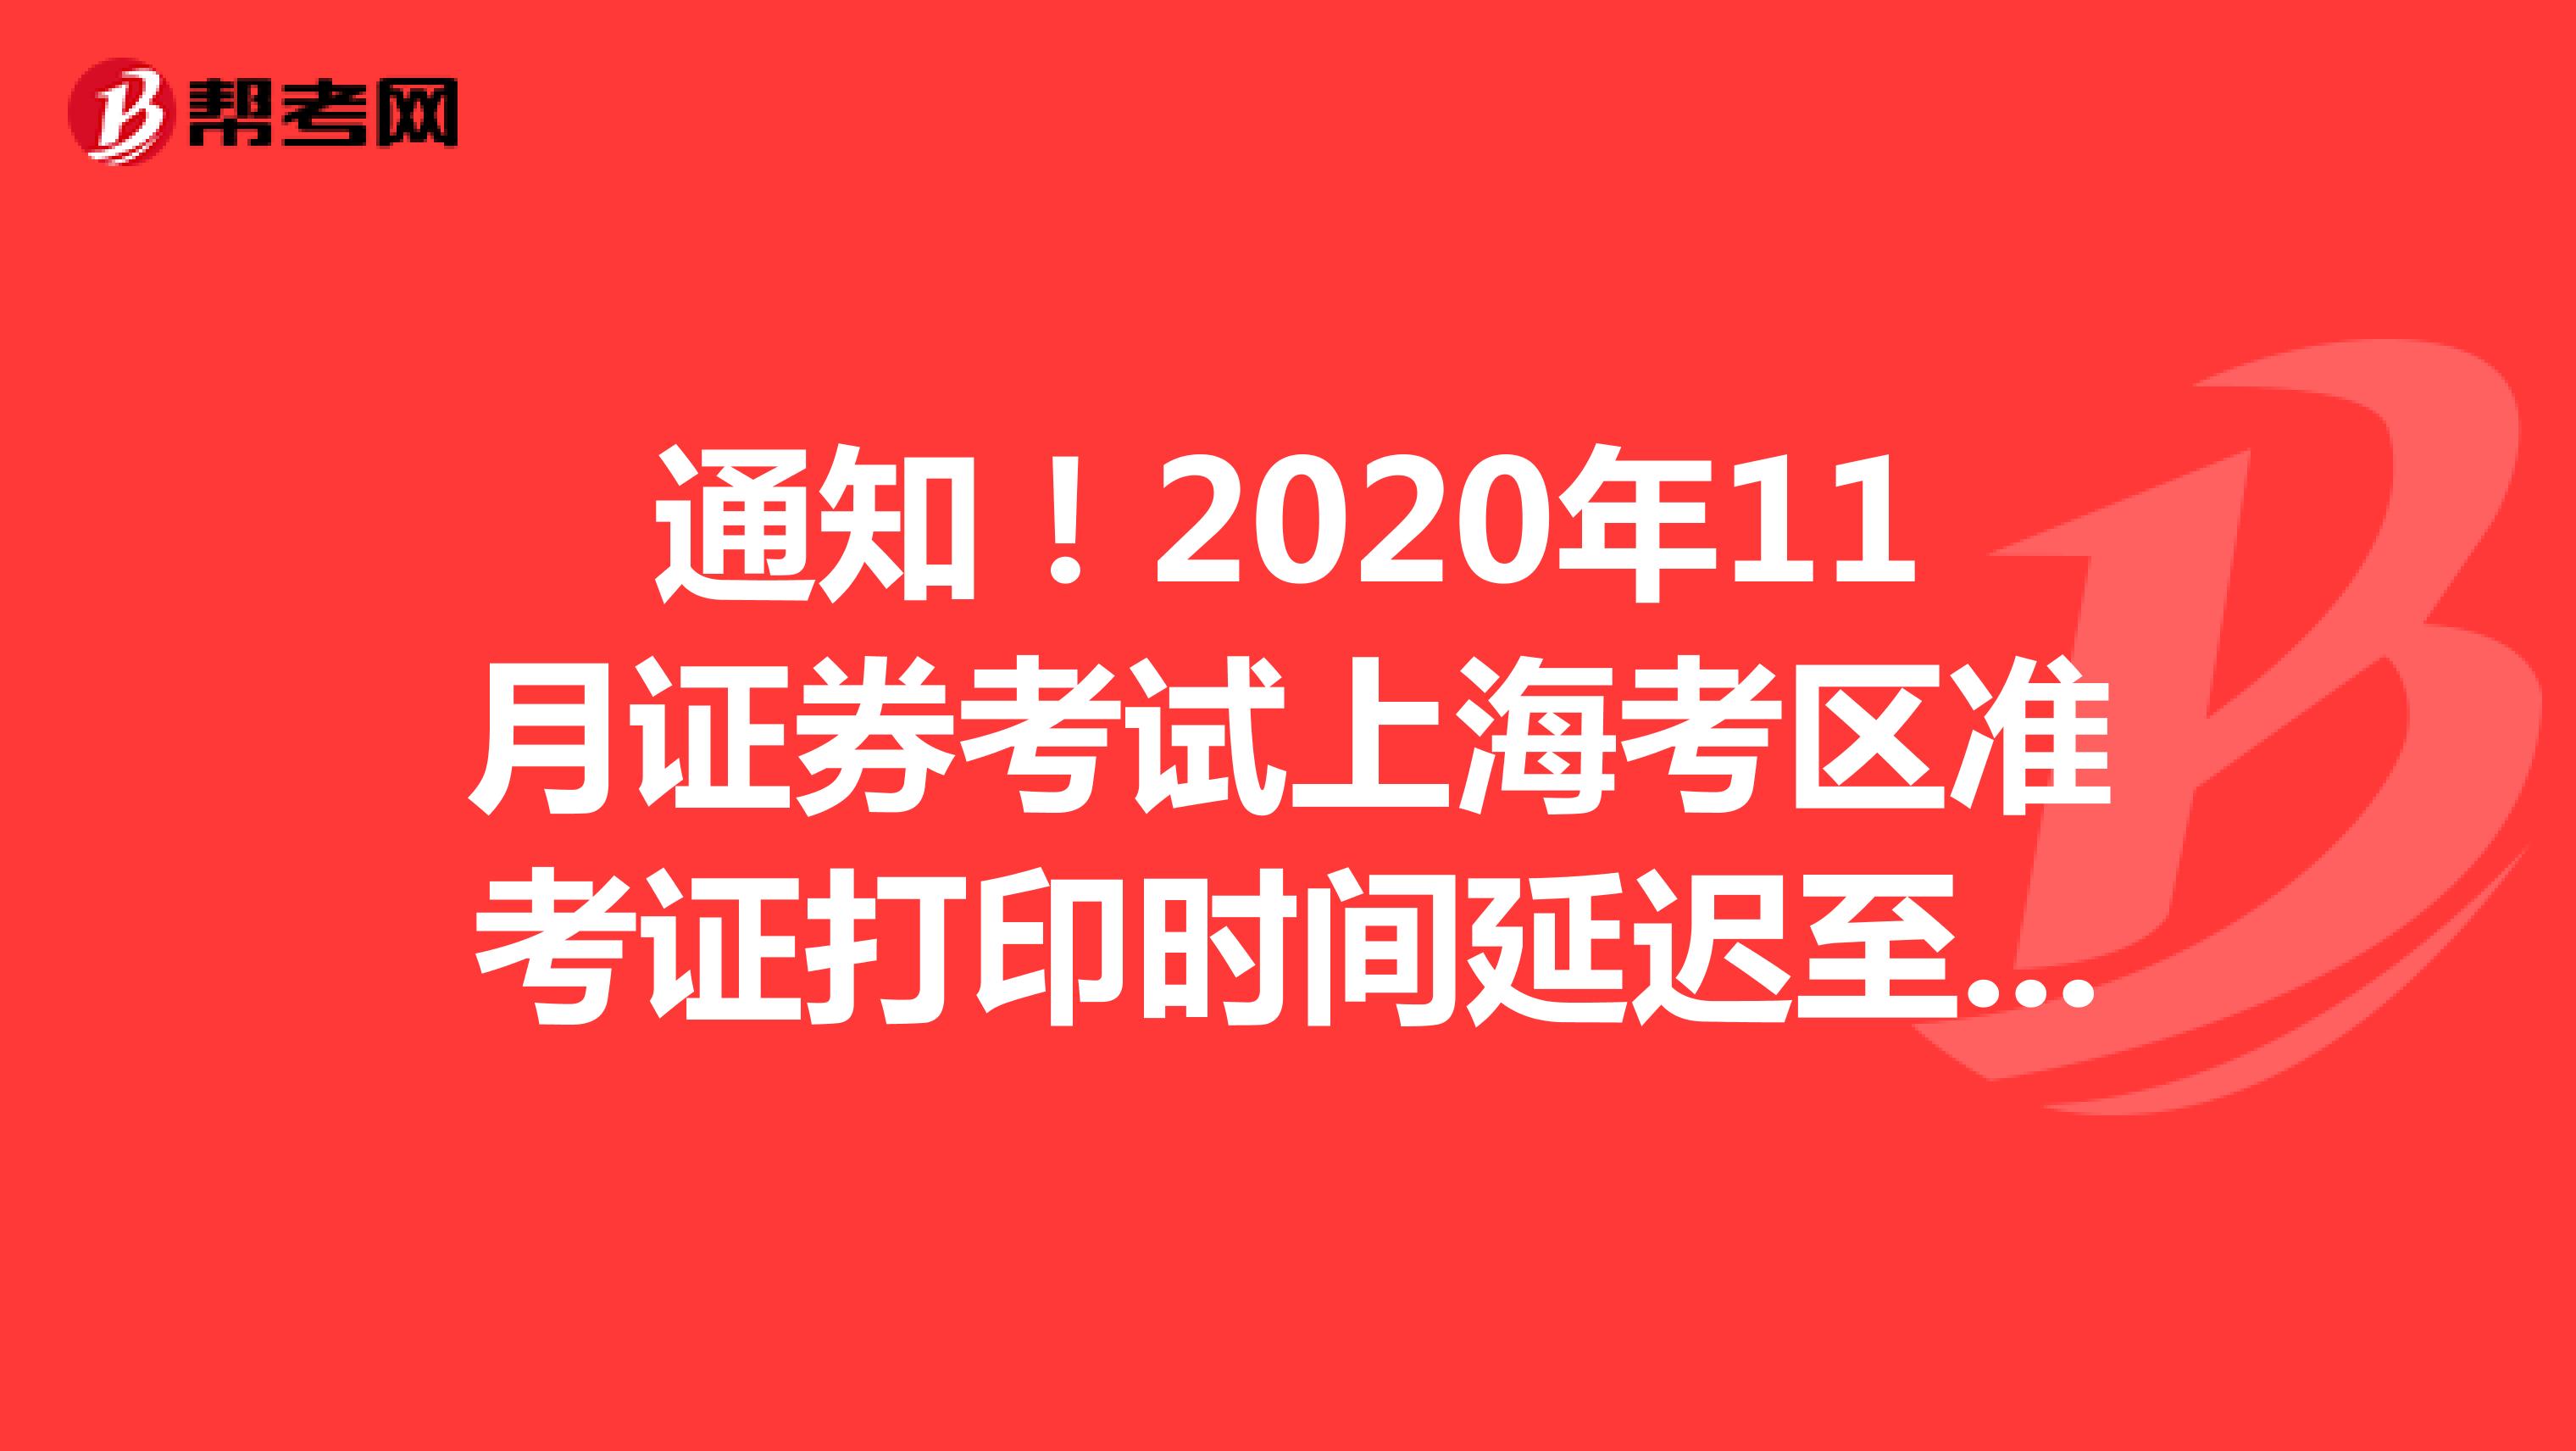 2020年11月证券考试上海考区准考证打印时间延迟至11月26日9时